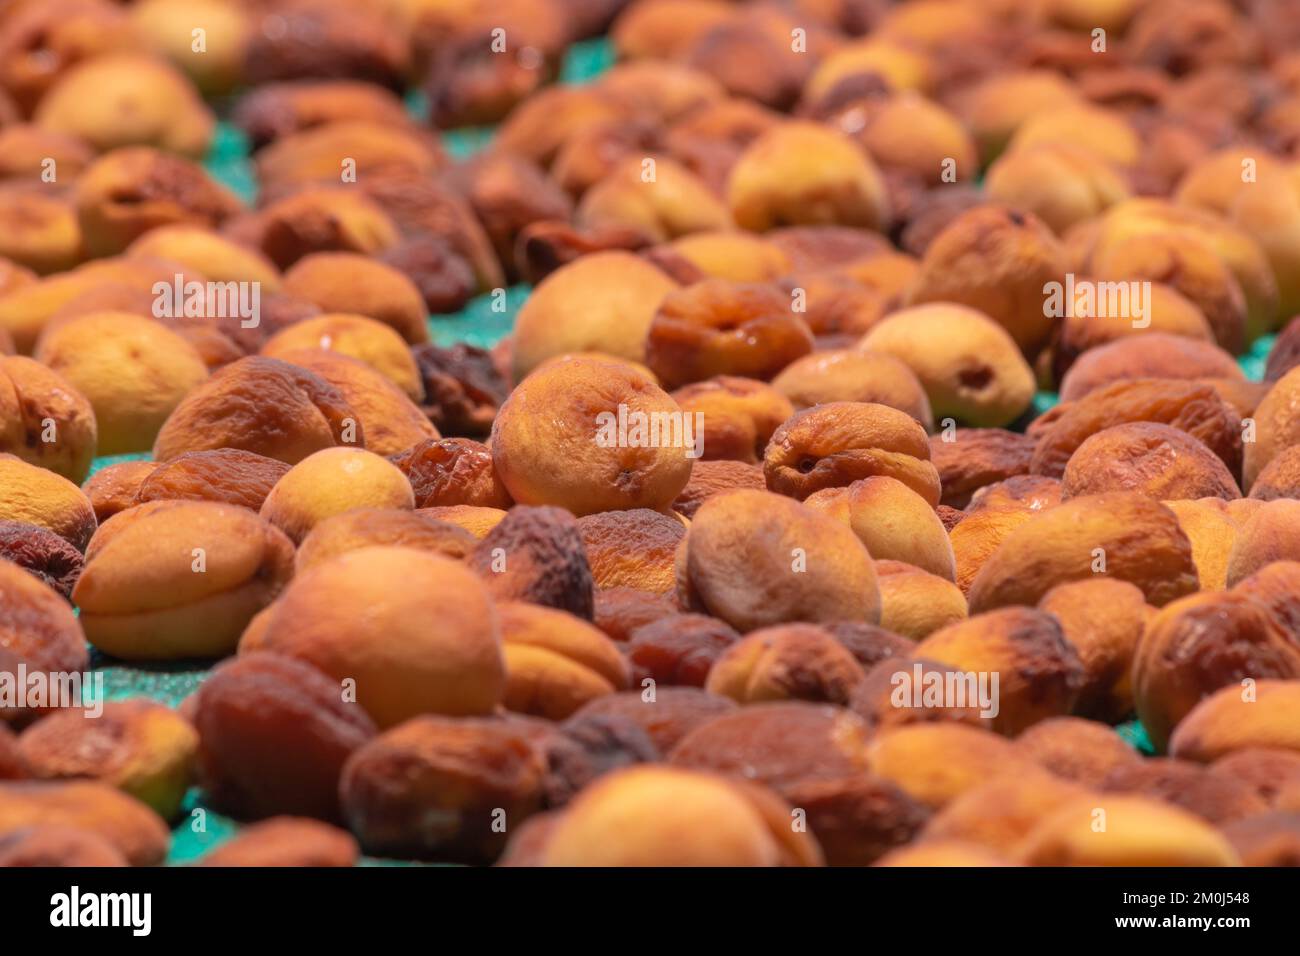 Sonnengetrocknete Aprikosen. Erzeugung von sonnengetrockneten Aprikosen in der Malatja-Türkei. Ökologische Rohlebensmittelproduktion. Stockfoto